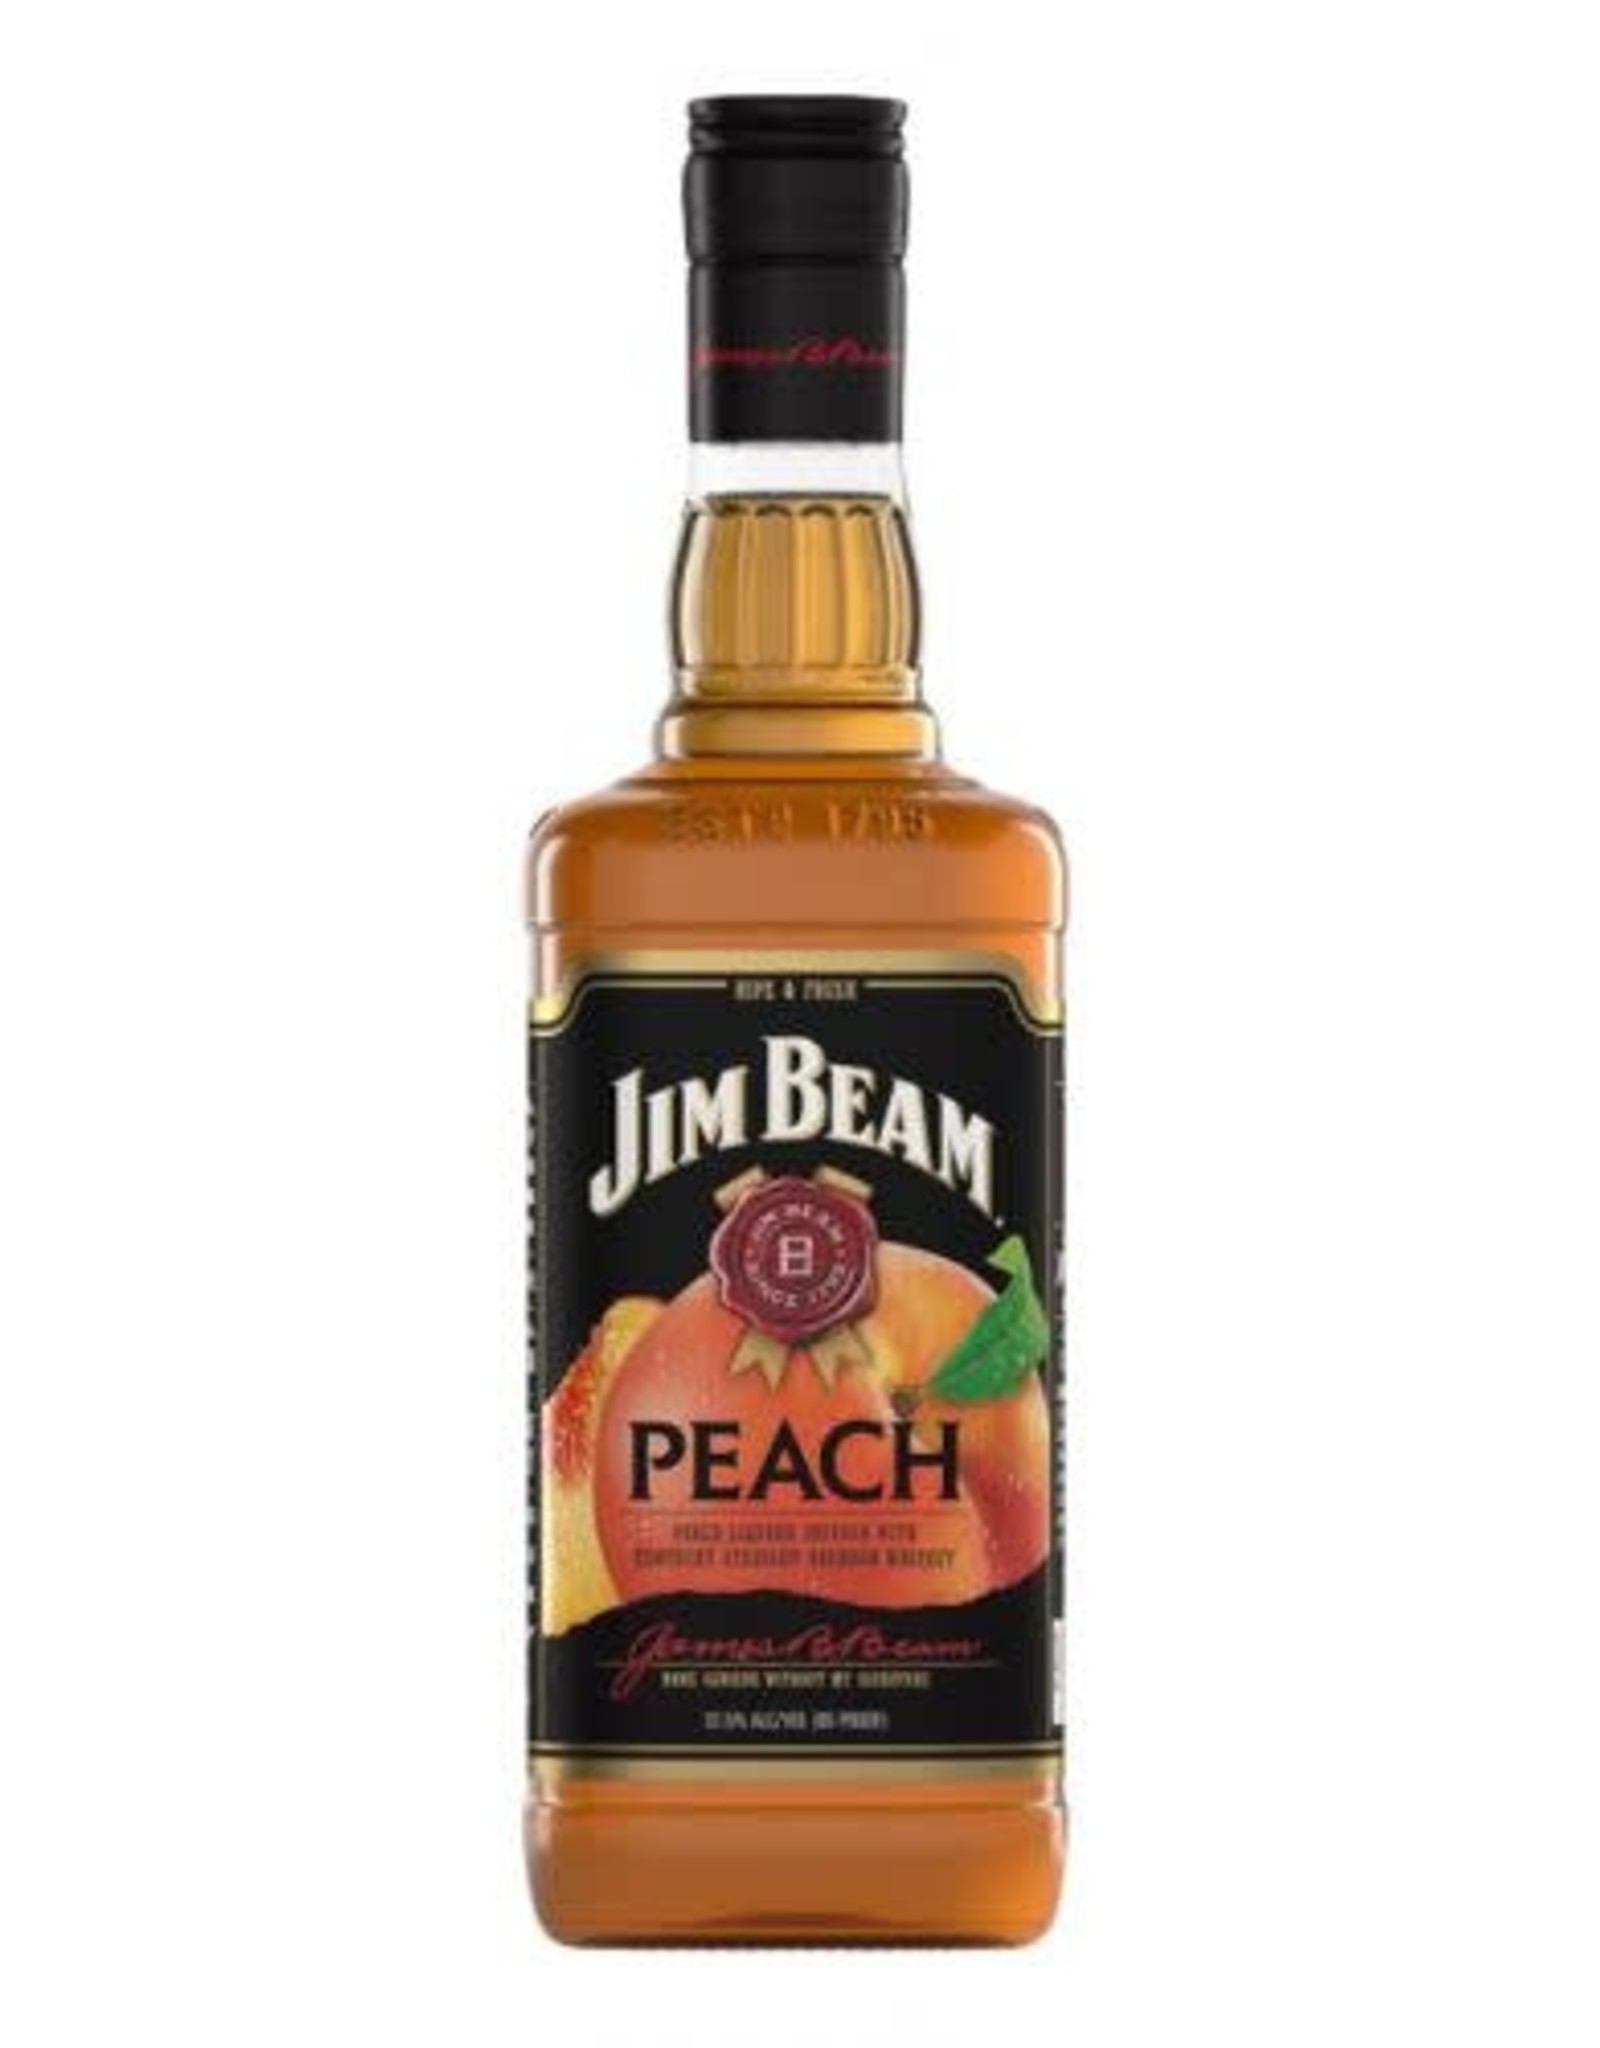 Jim Beam Jim Beam Peach Bourbon